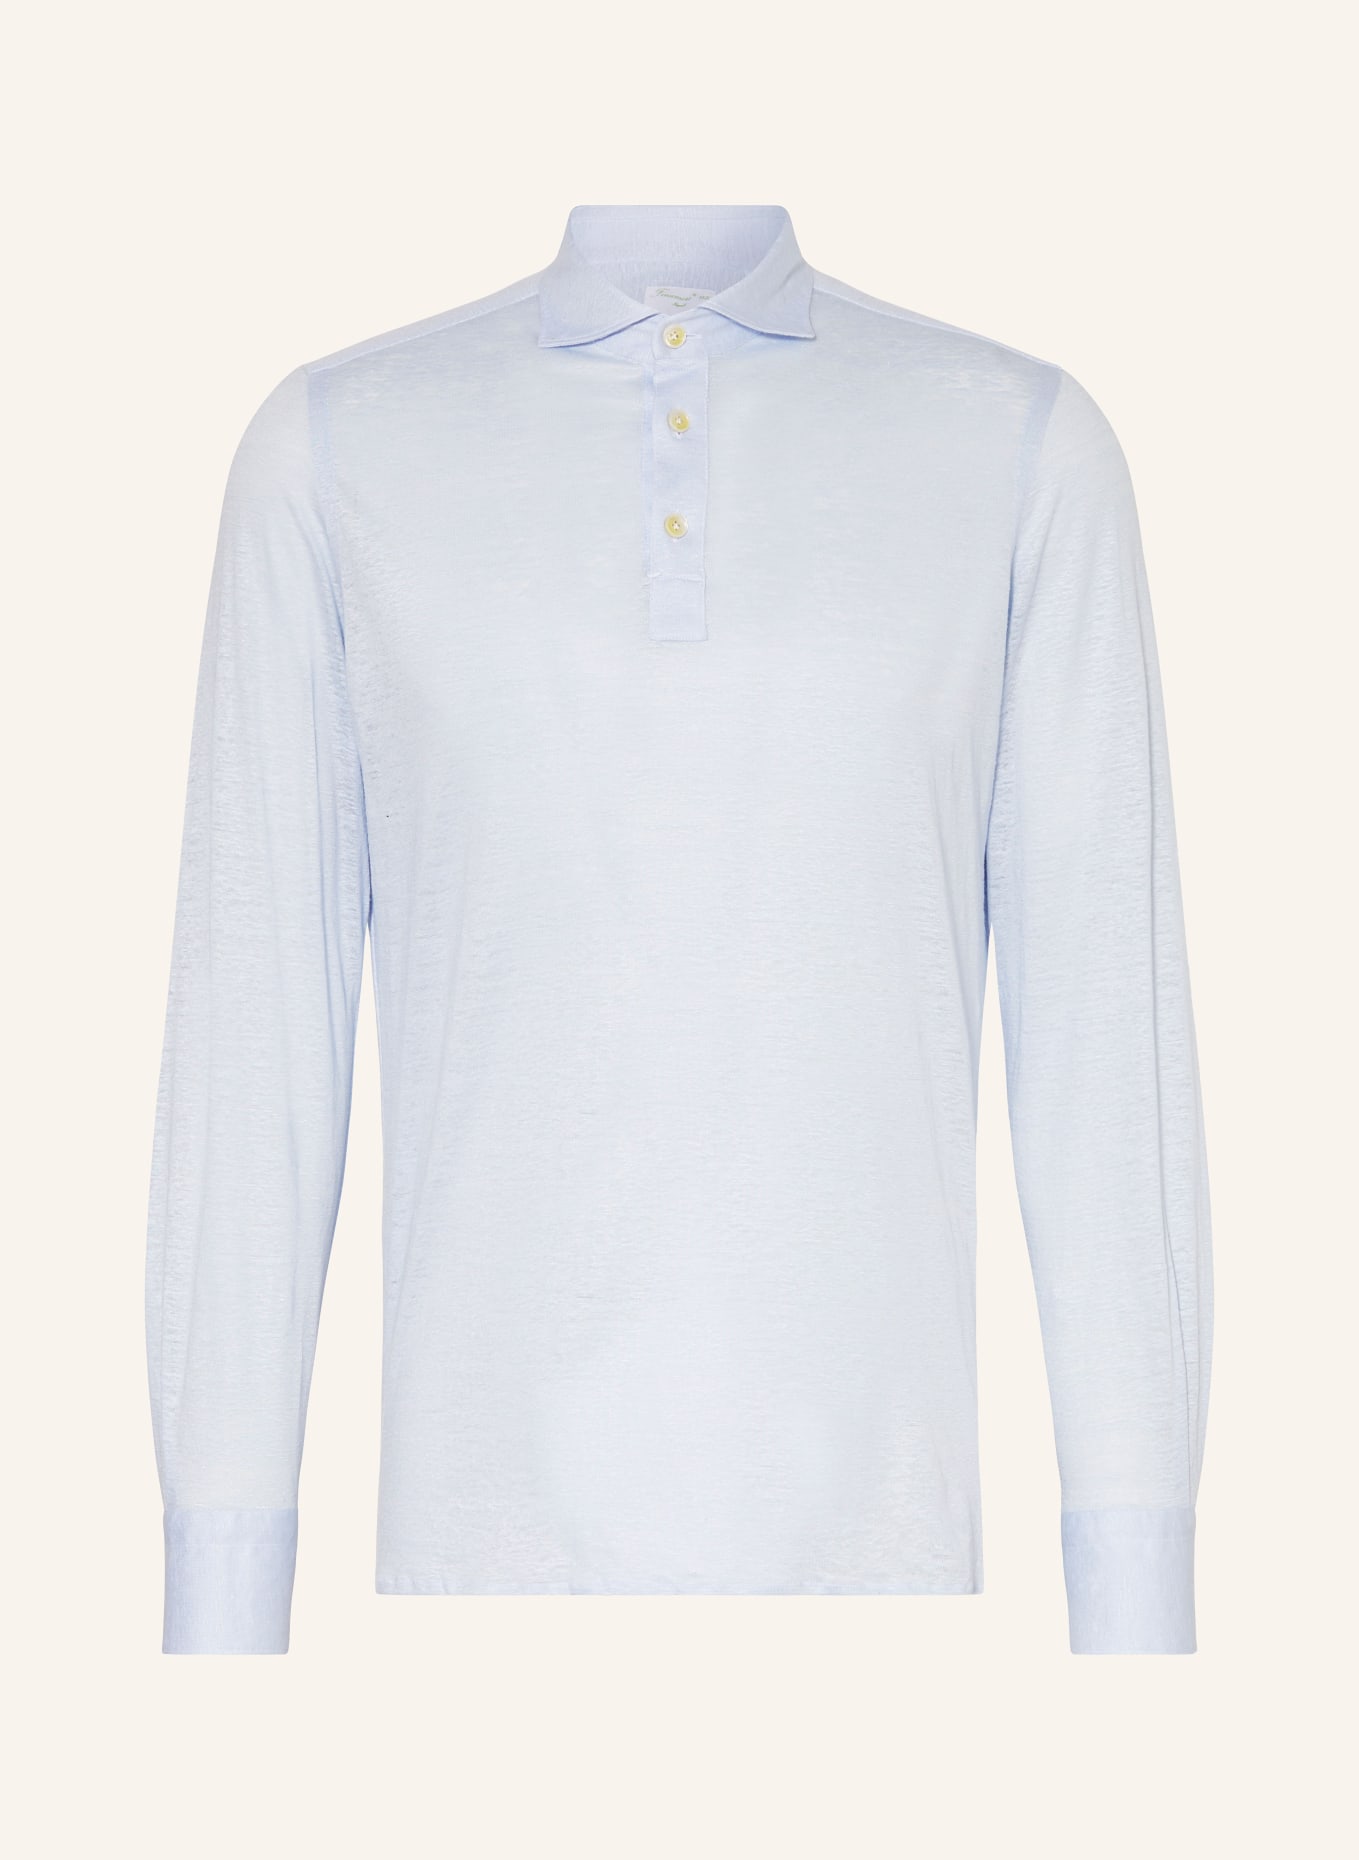 FINAMORE 1925 Linen shirt regular fit, Color: LIGHT BLUE (Image 1)